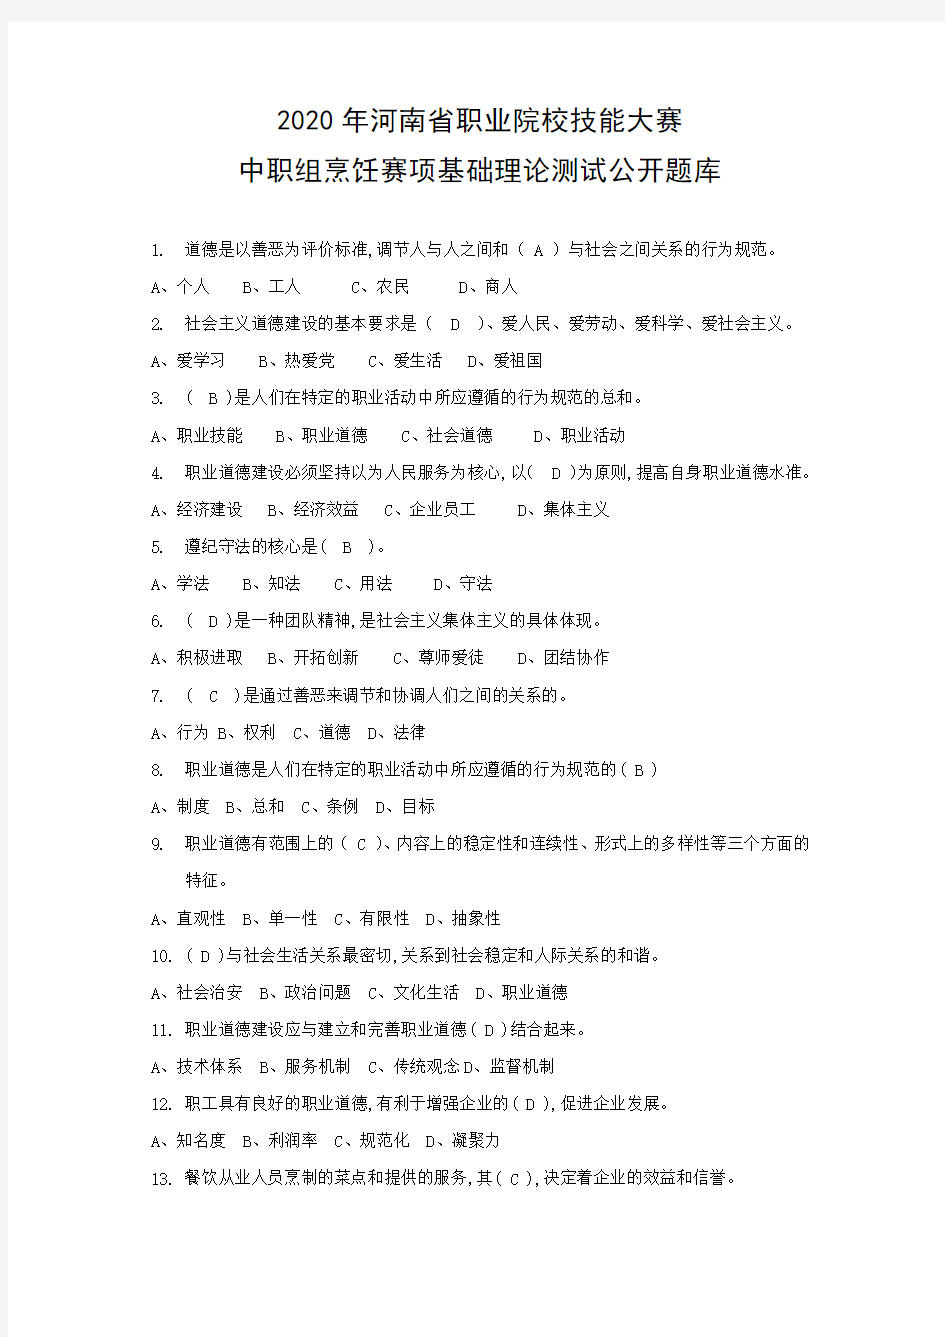 2020年河南省职业院校技能大赛烹饪赛项基础理论测试公开题库